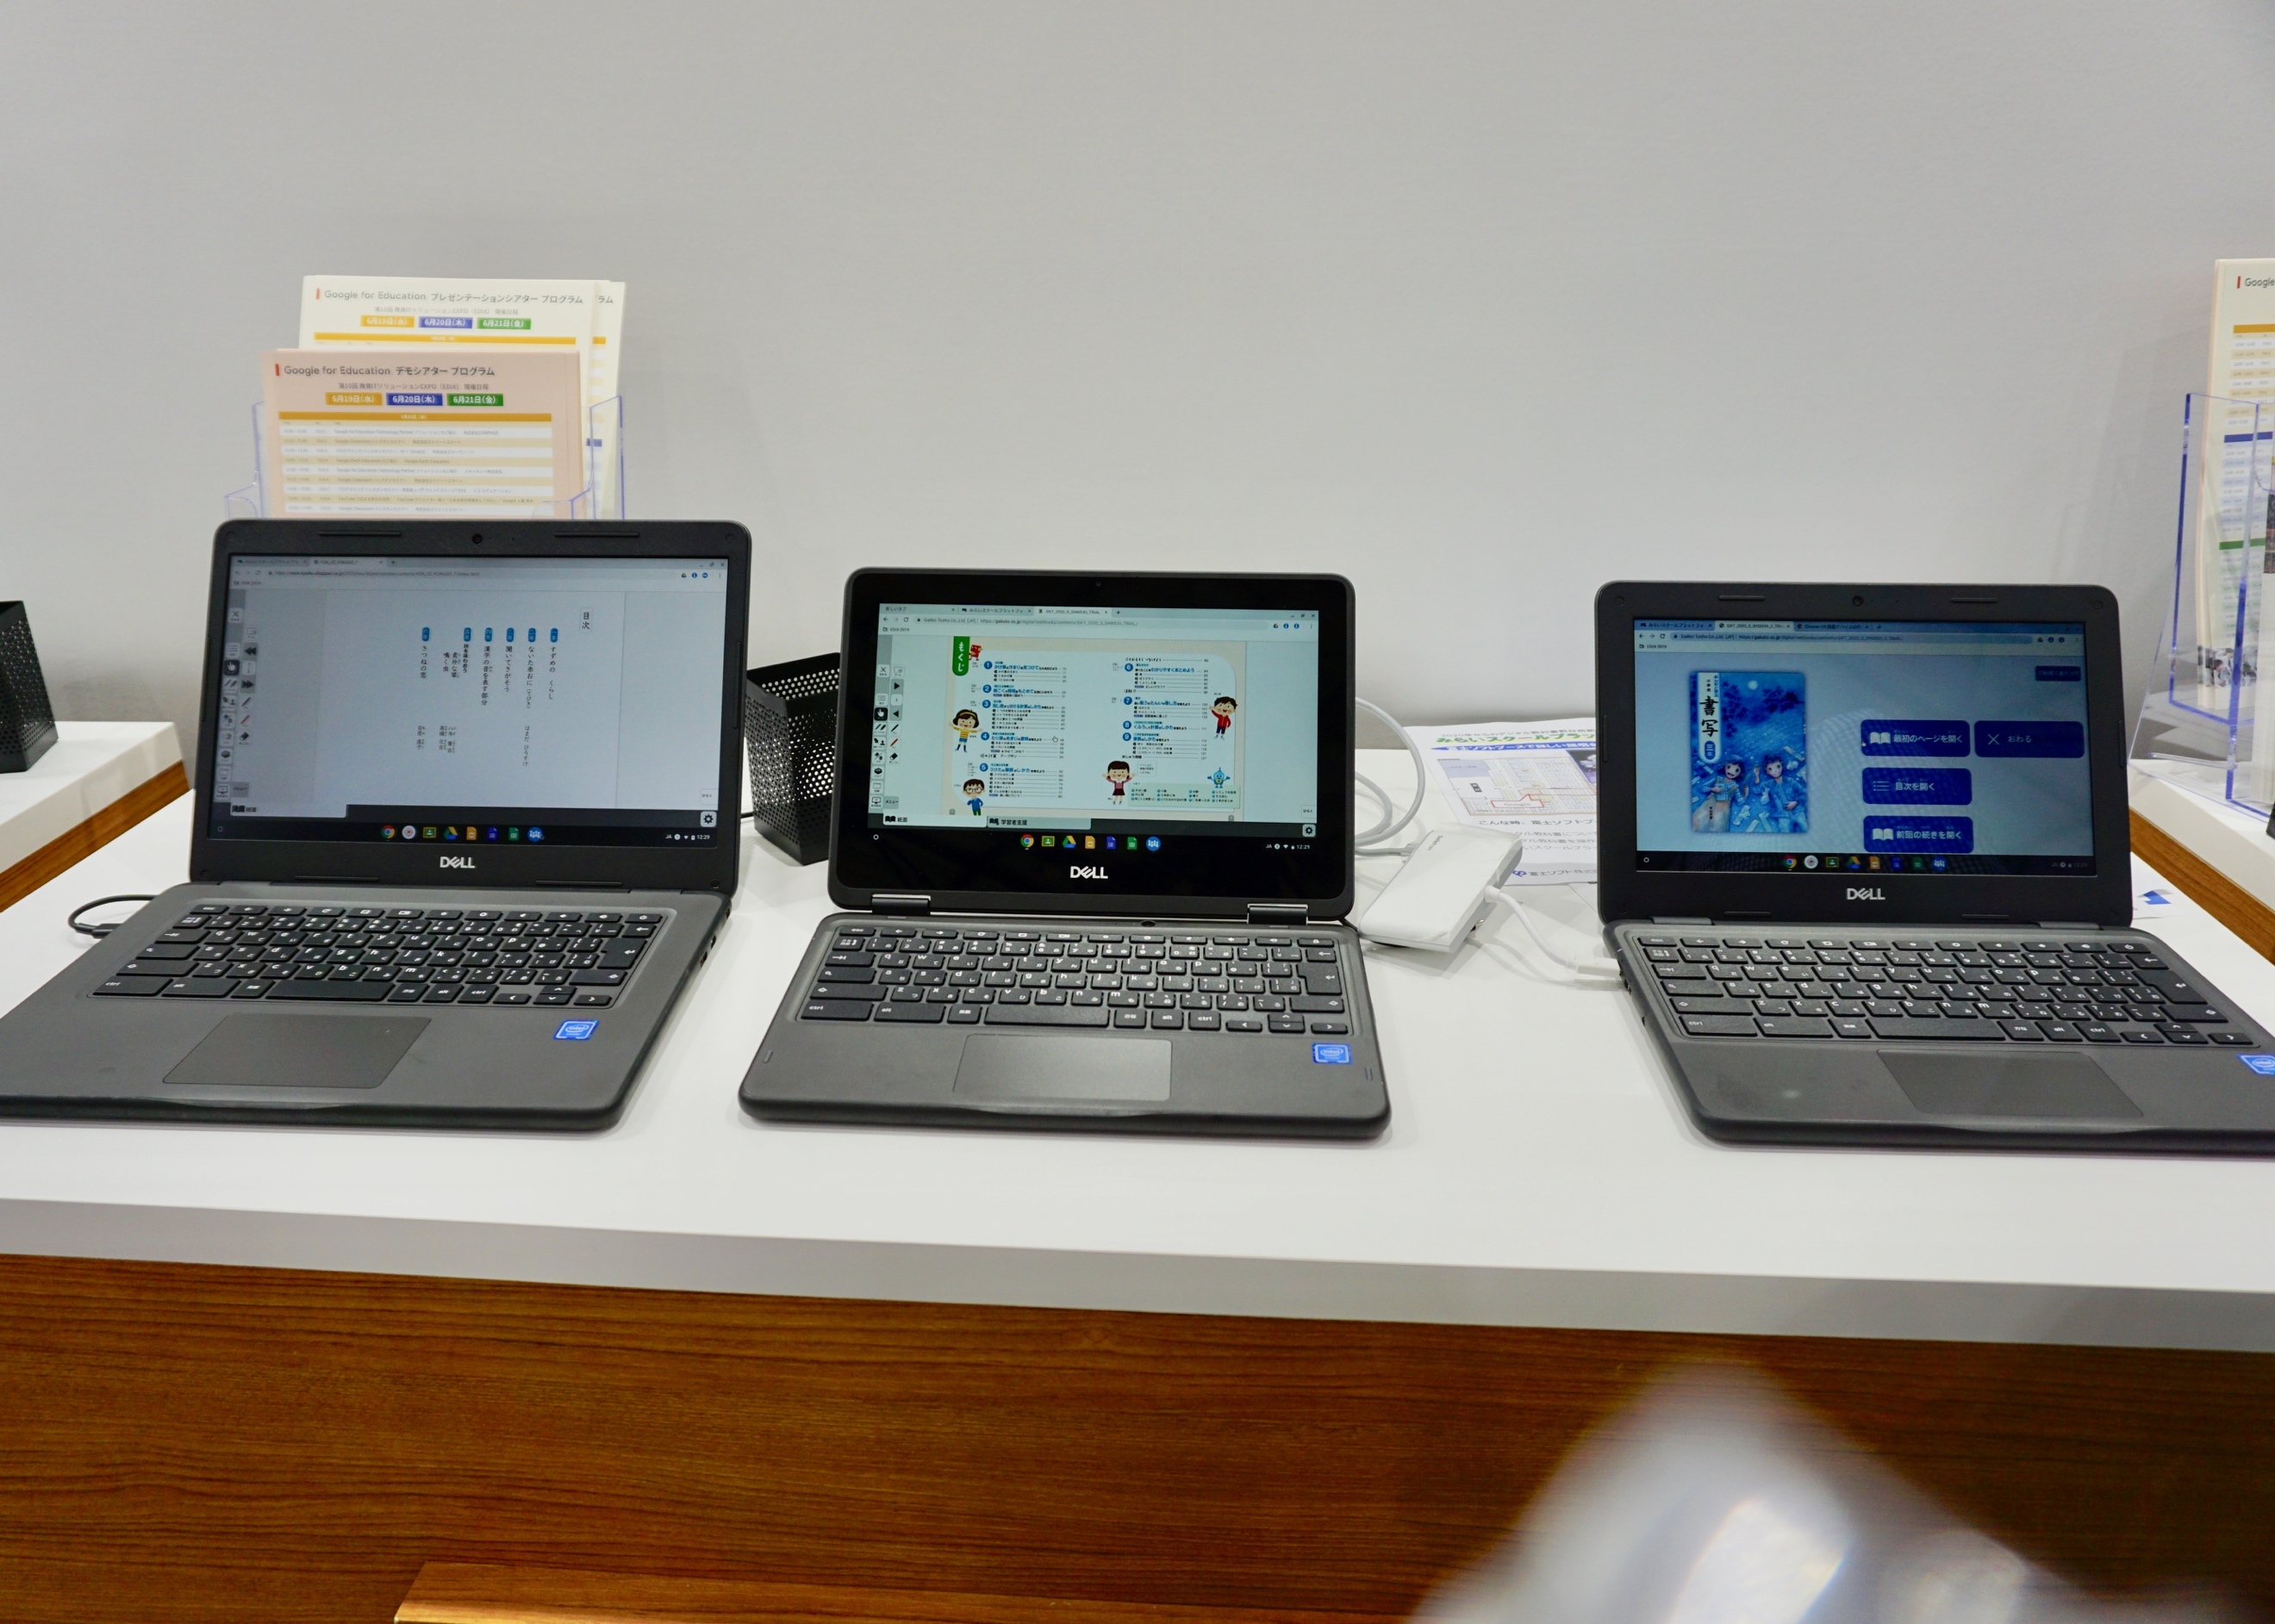 Dellの教育機関向けChromebook。ノートパソコン2機種と2-in-1タイプ1機種の計3モデルを展示。
